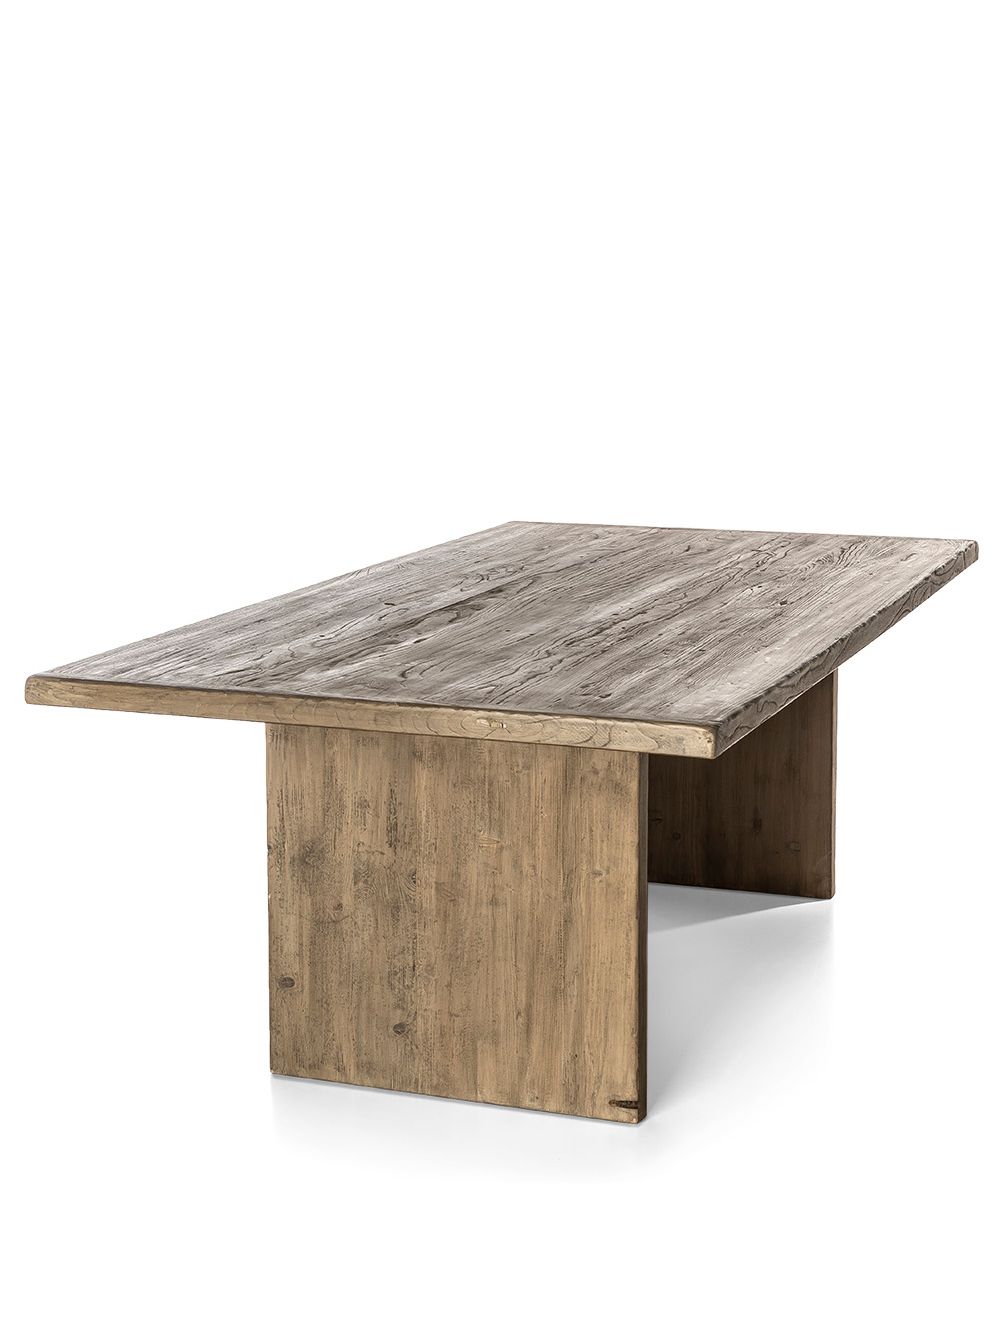 Mesa-de-comedor-de-madera-rustica-GRIFFIN-COLOR-ROBLE-210X110-Landmark-02